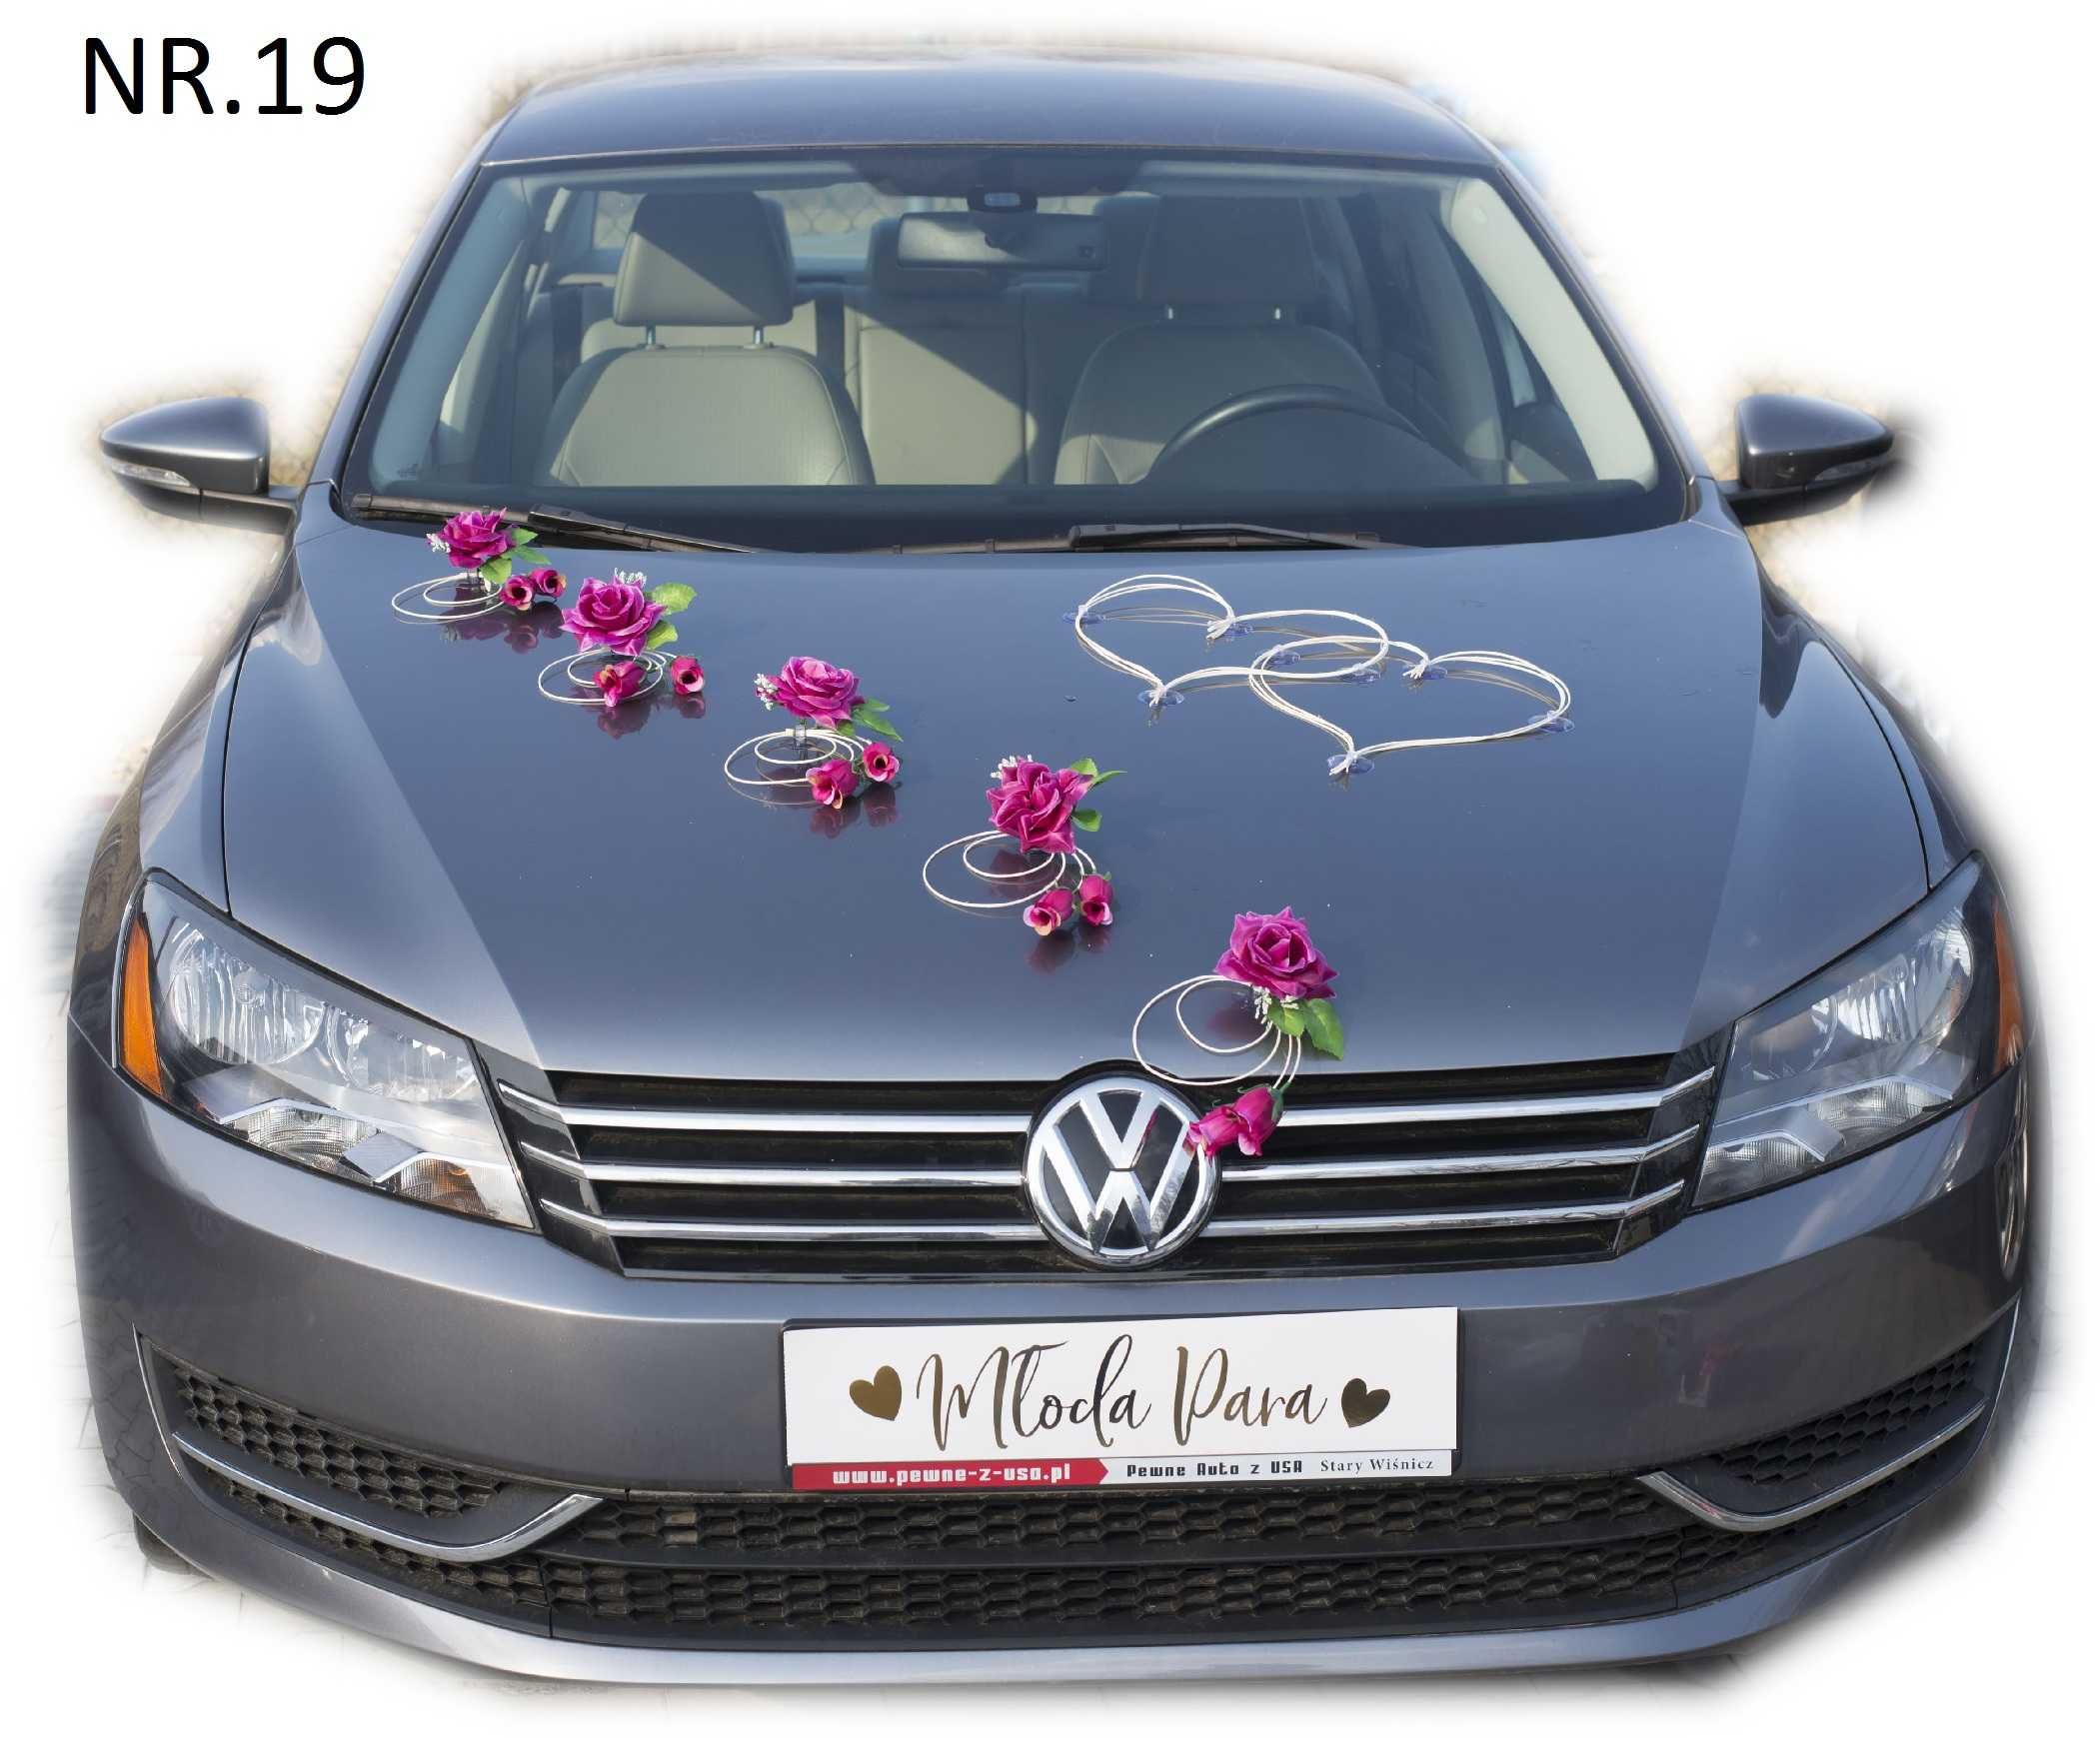 Ozdoba na auto-dekoracje na samochód do ślubu 019 FUKSJA